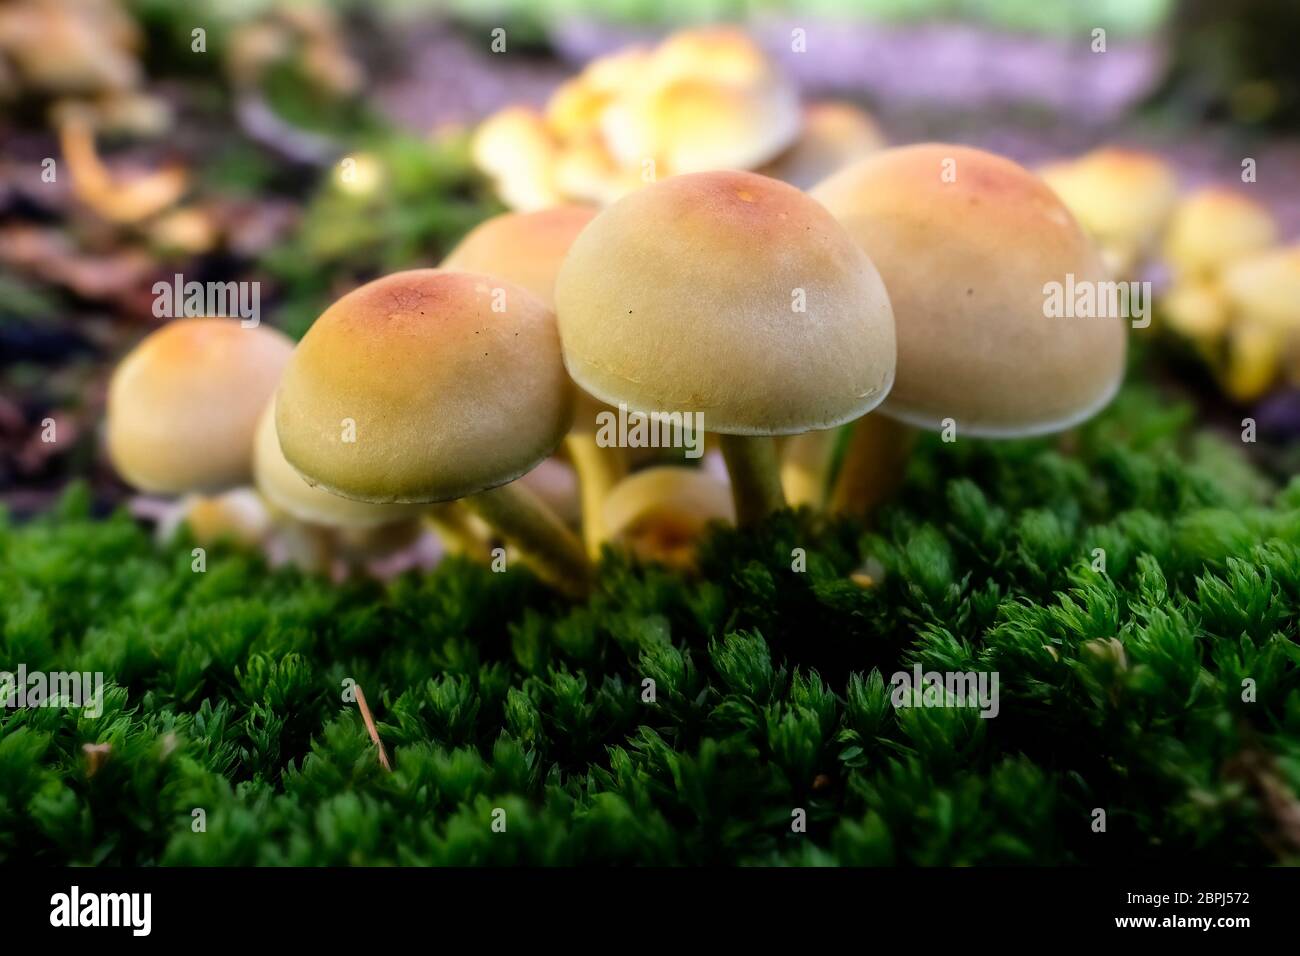 Grünblättrige Schwefelköpfe zum Thema Mykologie - Makroaufnahme Stock Photo